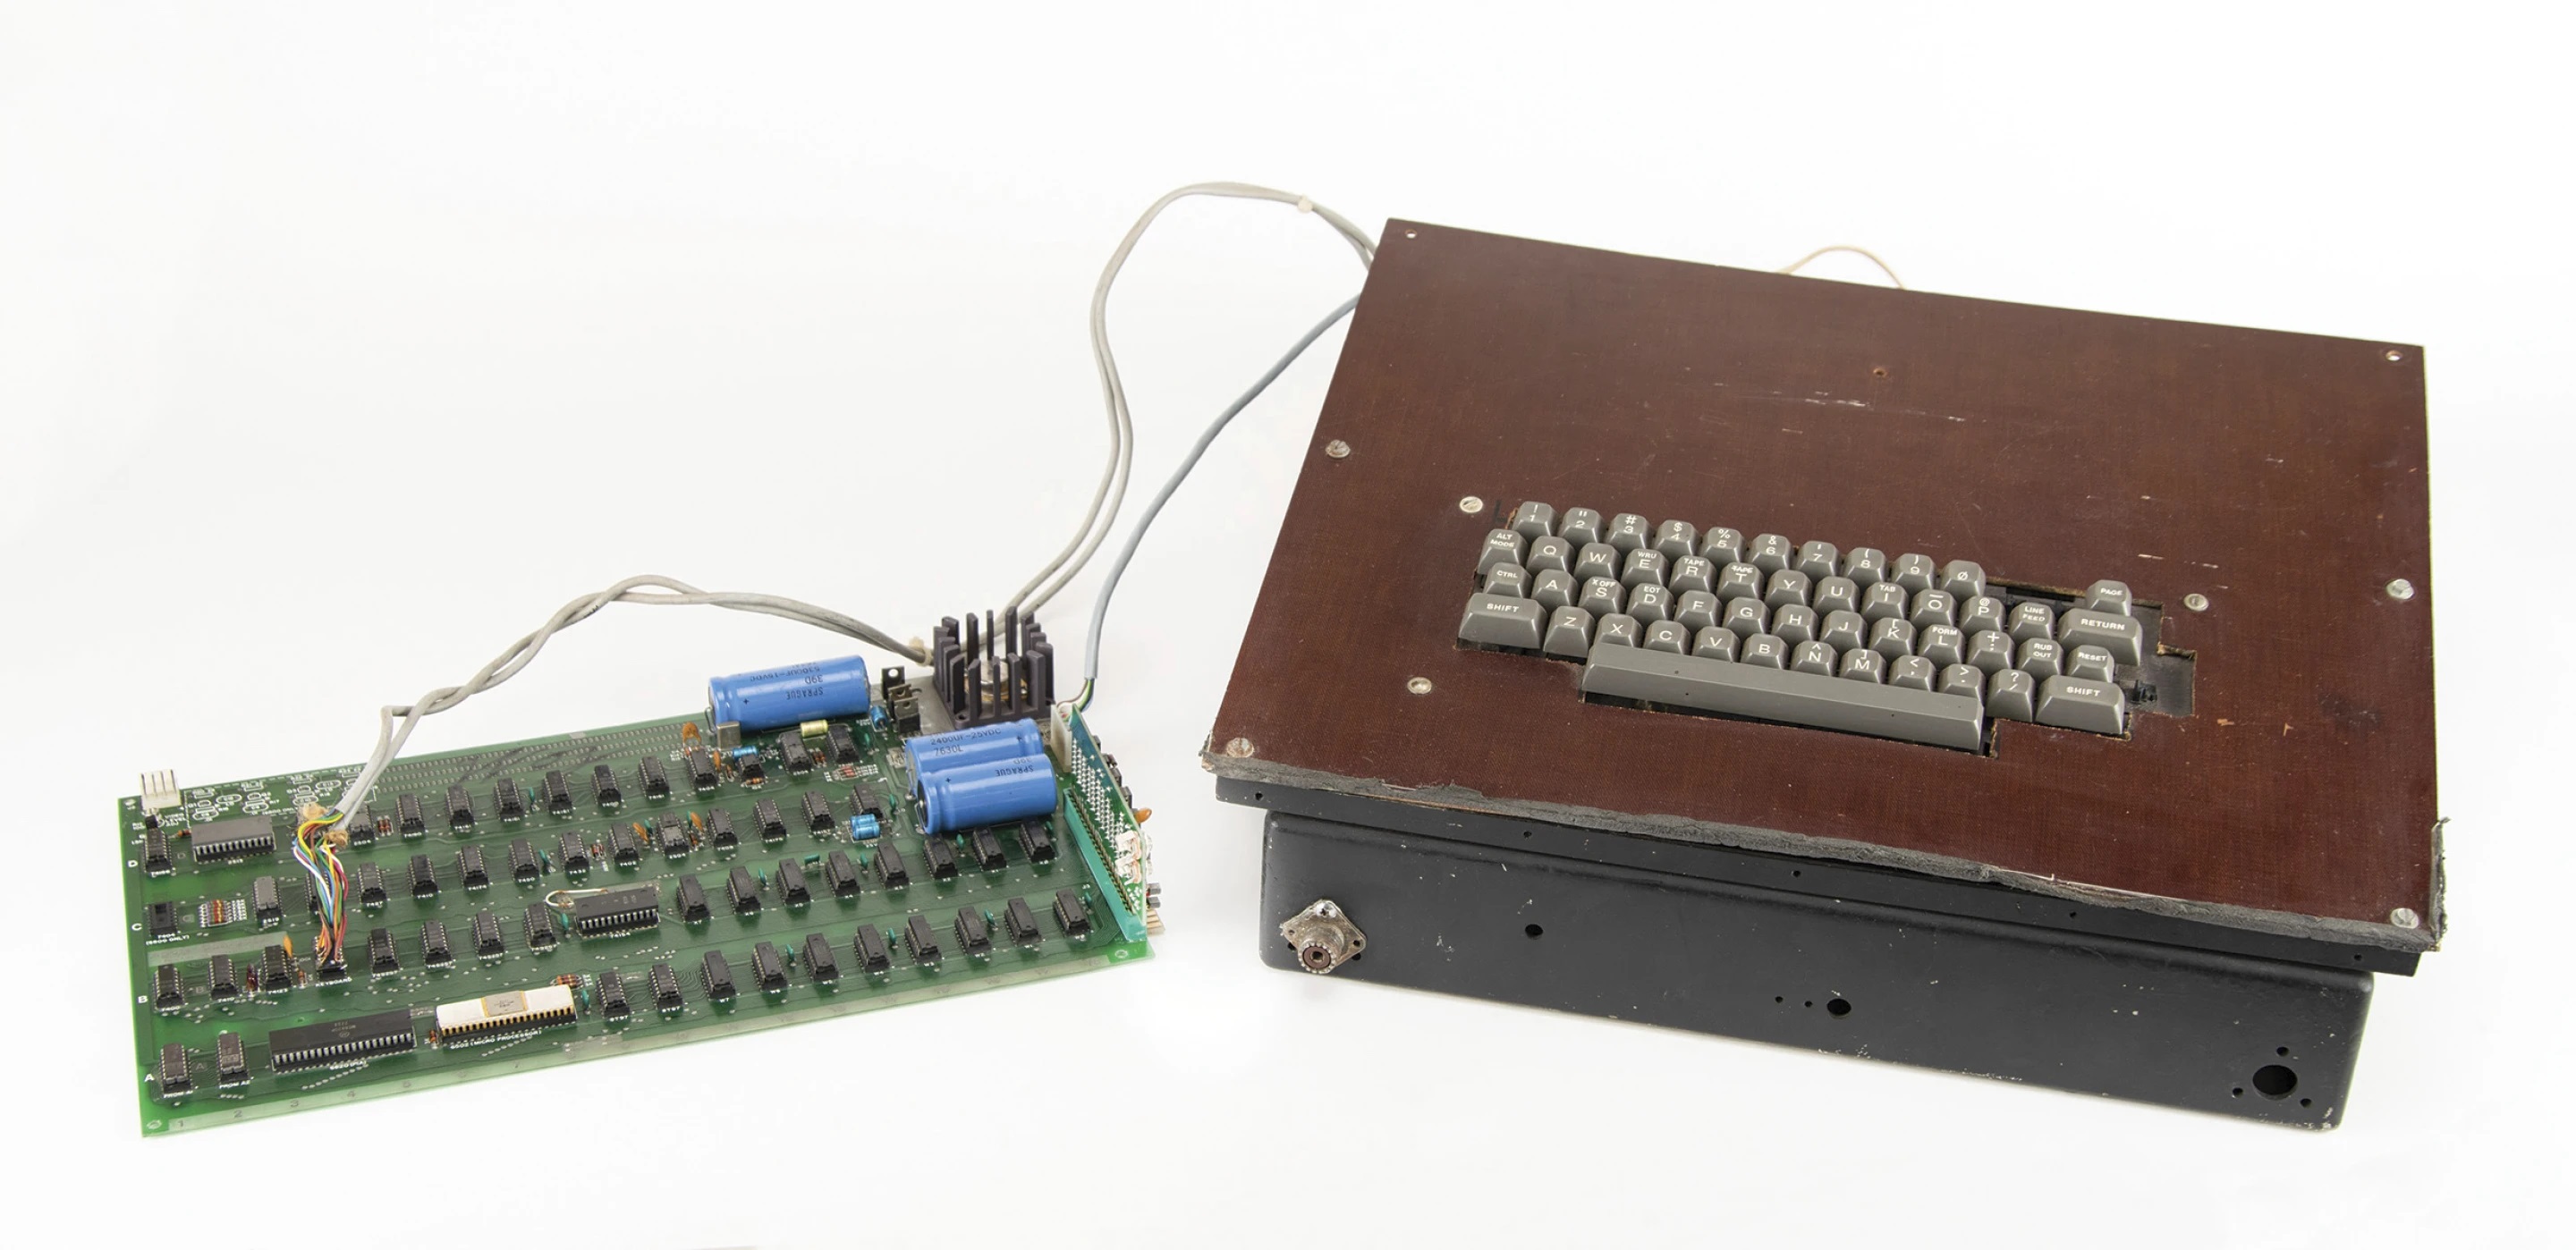 Apples första dator, som lanserades på 70-talet, säljs på auktion - den planeras att säljas för 200 000 dollar